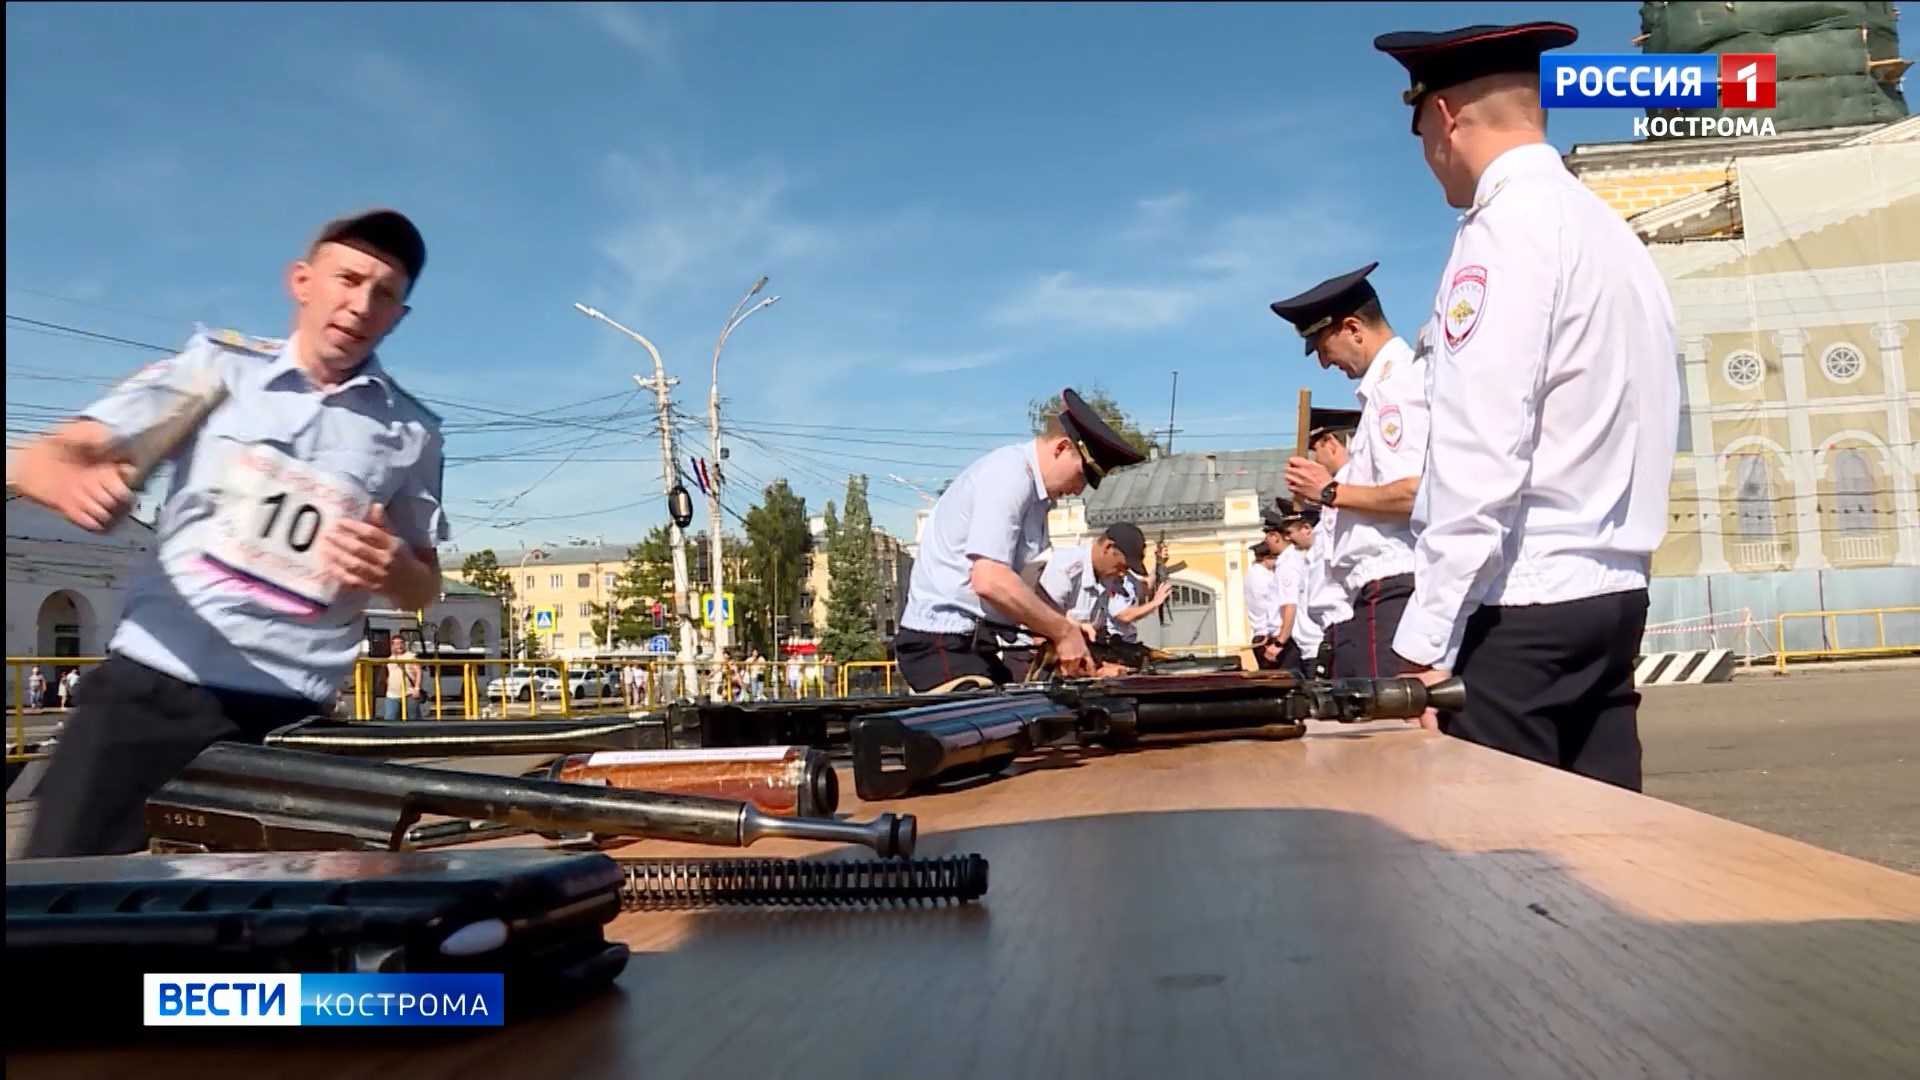 Стрельба, бег с собаками и «Гром»: полицейские устроили спортивный праздник в центре Костромы